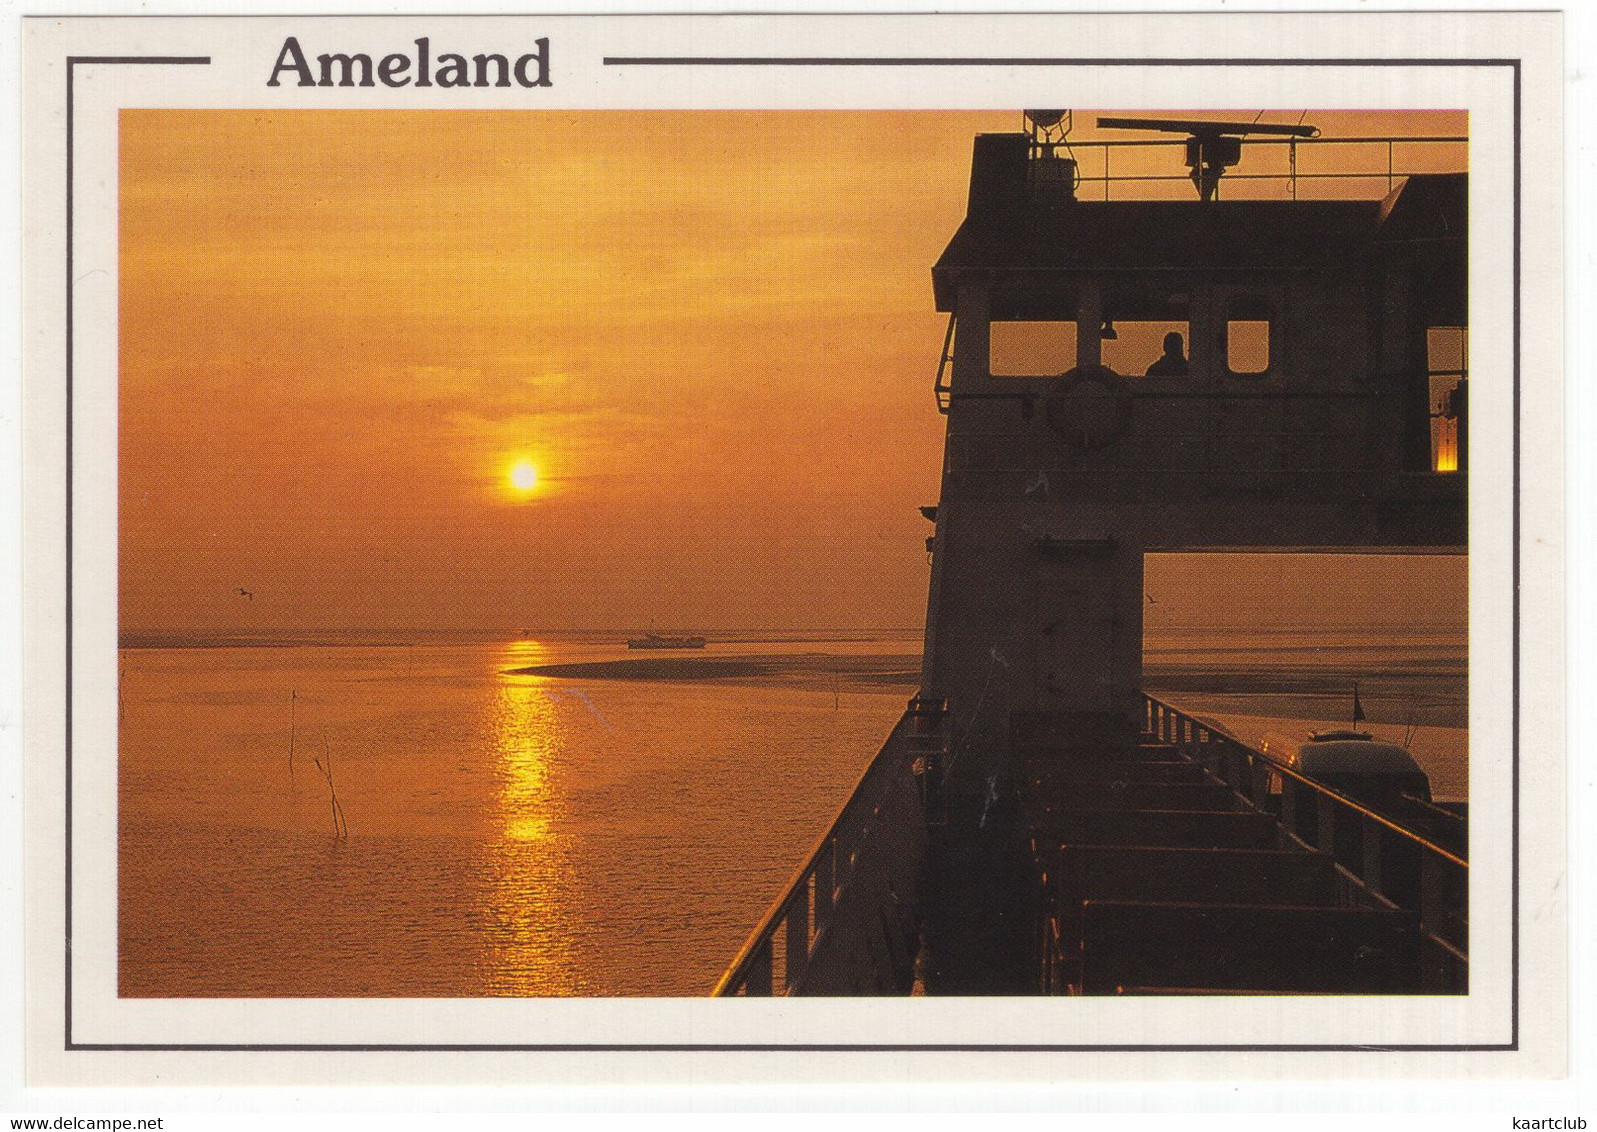 Ameland - (Wadden, Nederland / Holland - Nr. AMD 44 - Veerboot / Ferry - Ameland